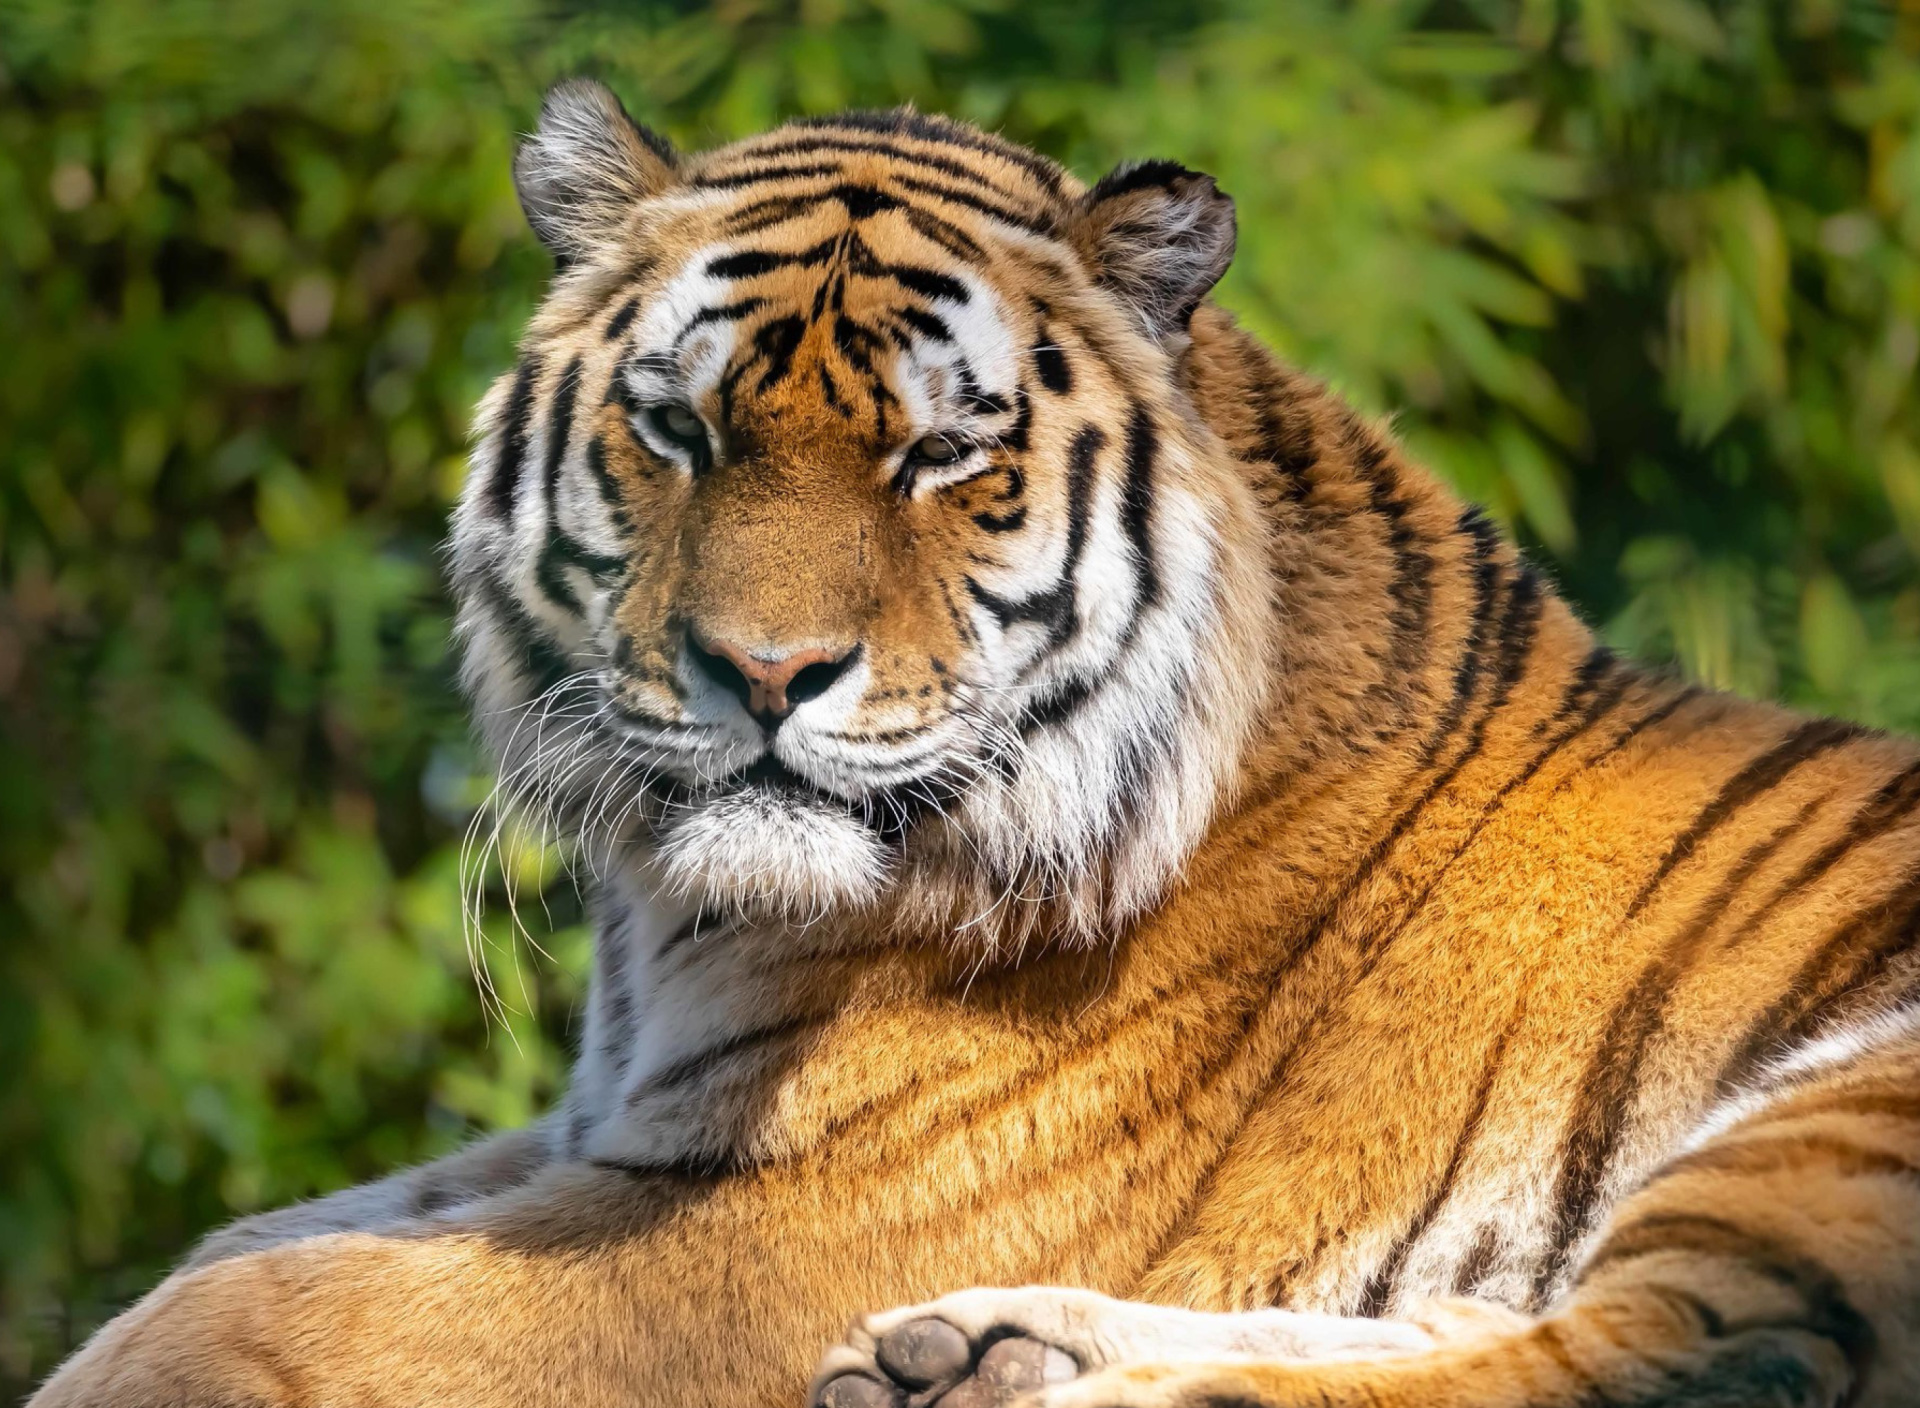 Malay Tiger at the New York Zoo screenshot #1 1920x1408